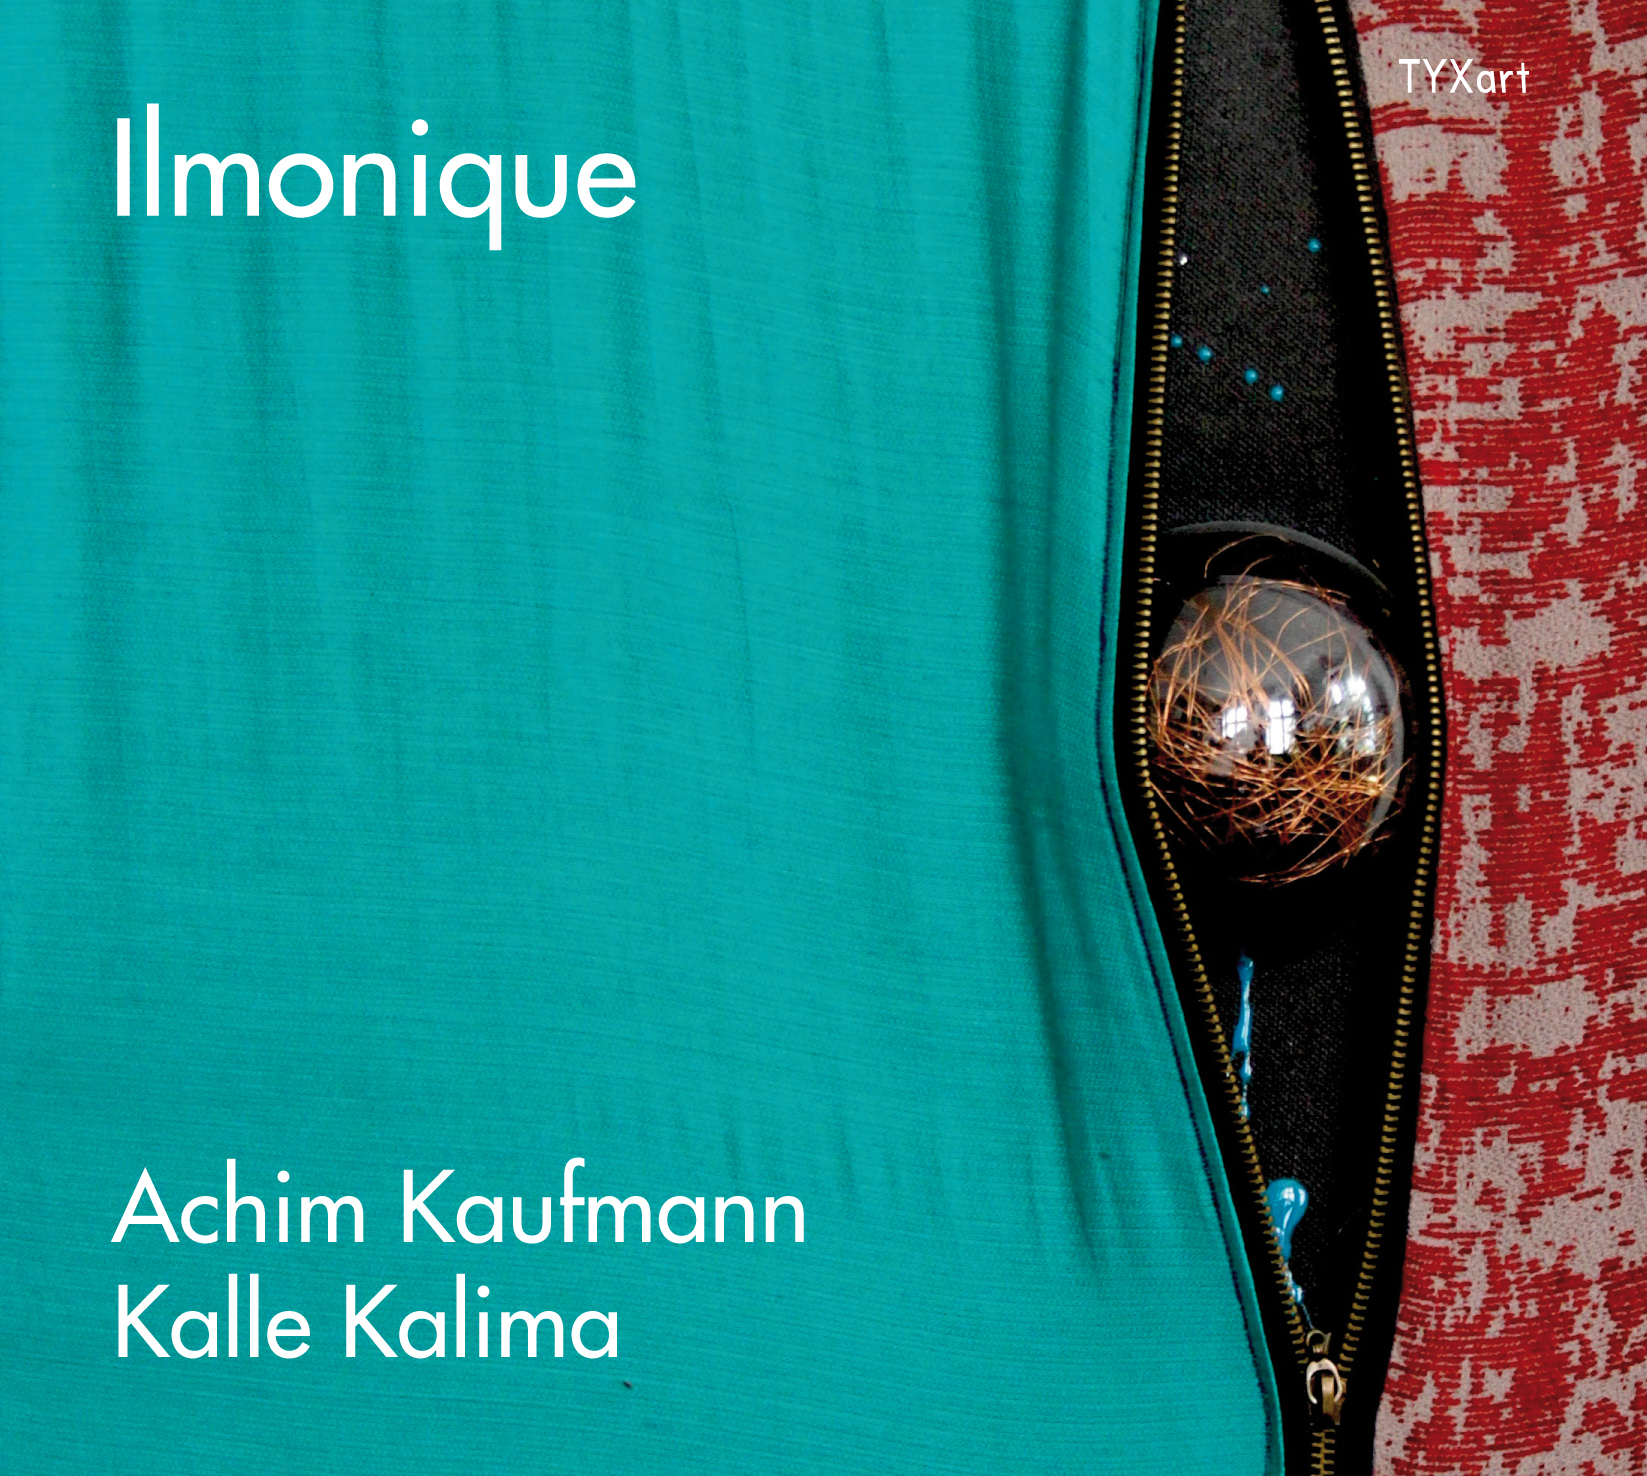 Ilmonique - Achim Kaufmann, Piano - Kalle Kalima, Guitar